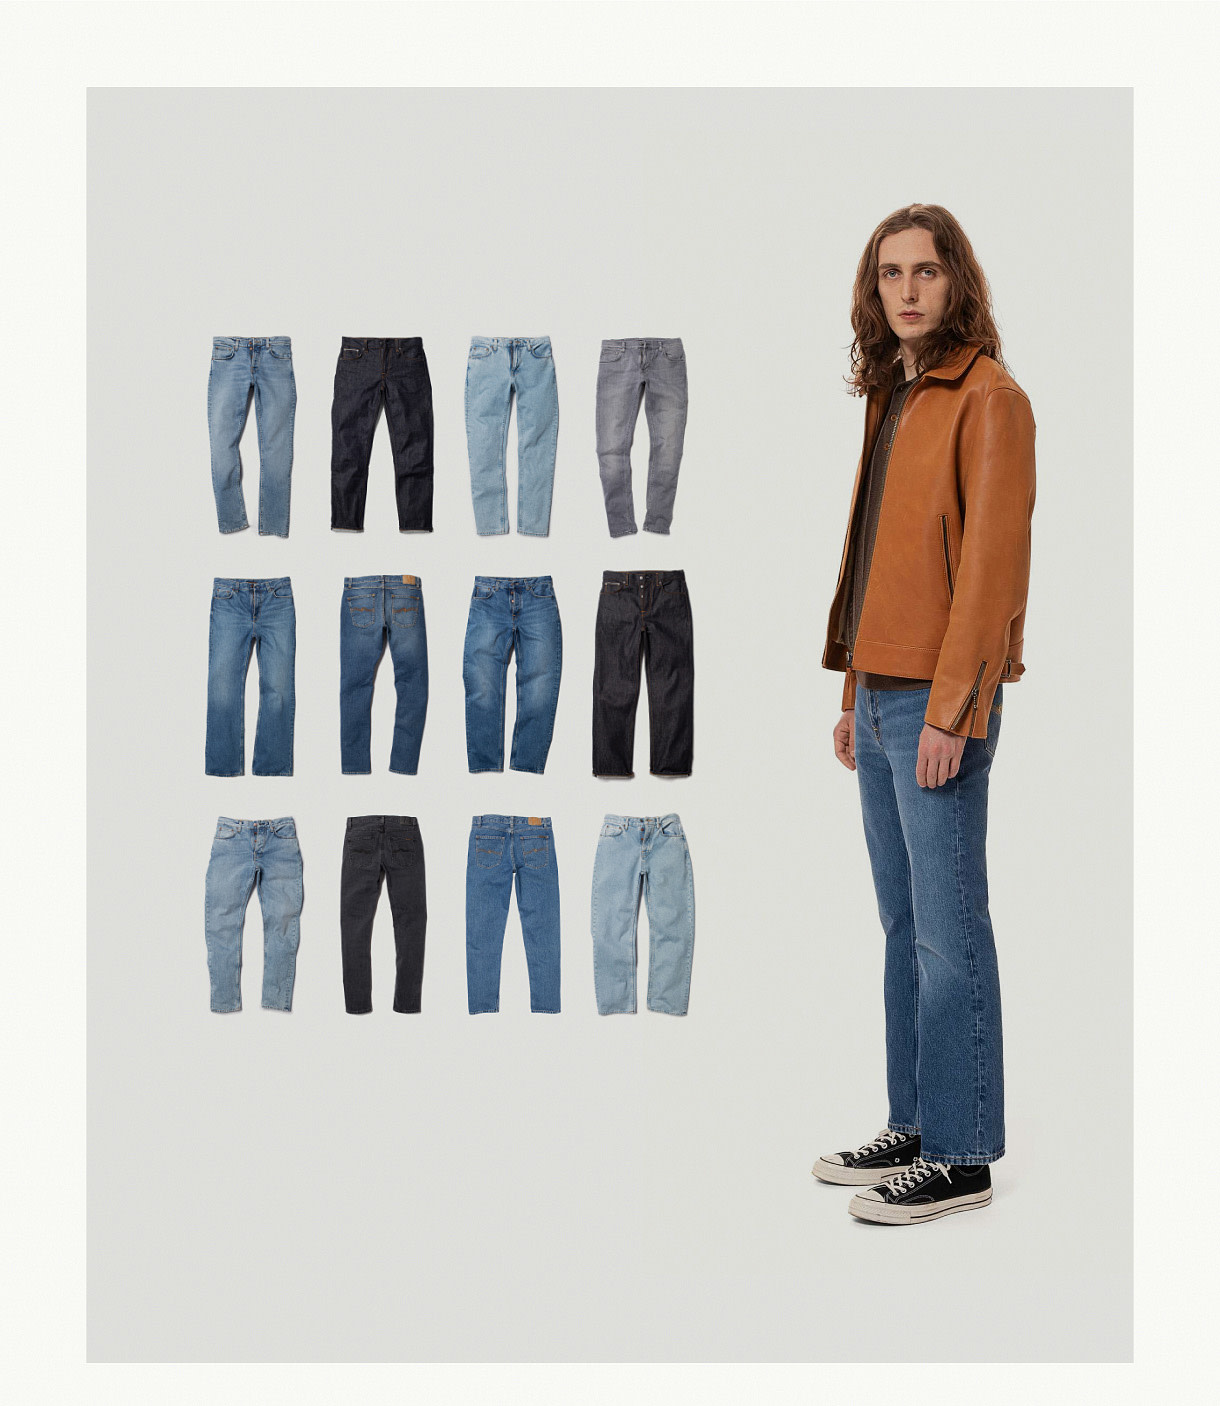 Shop men's jeans